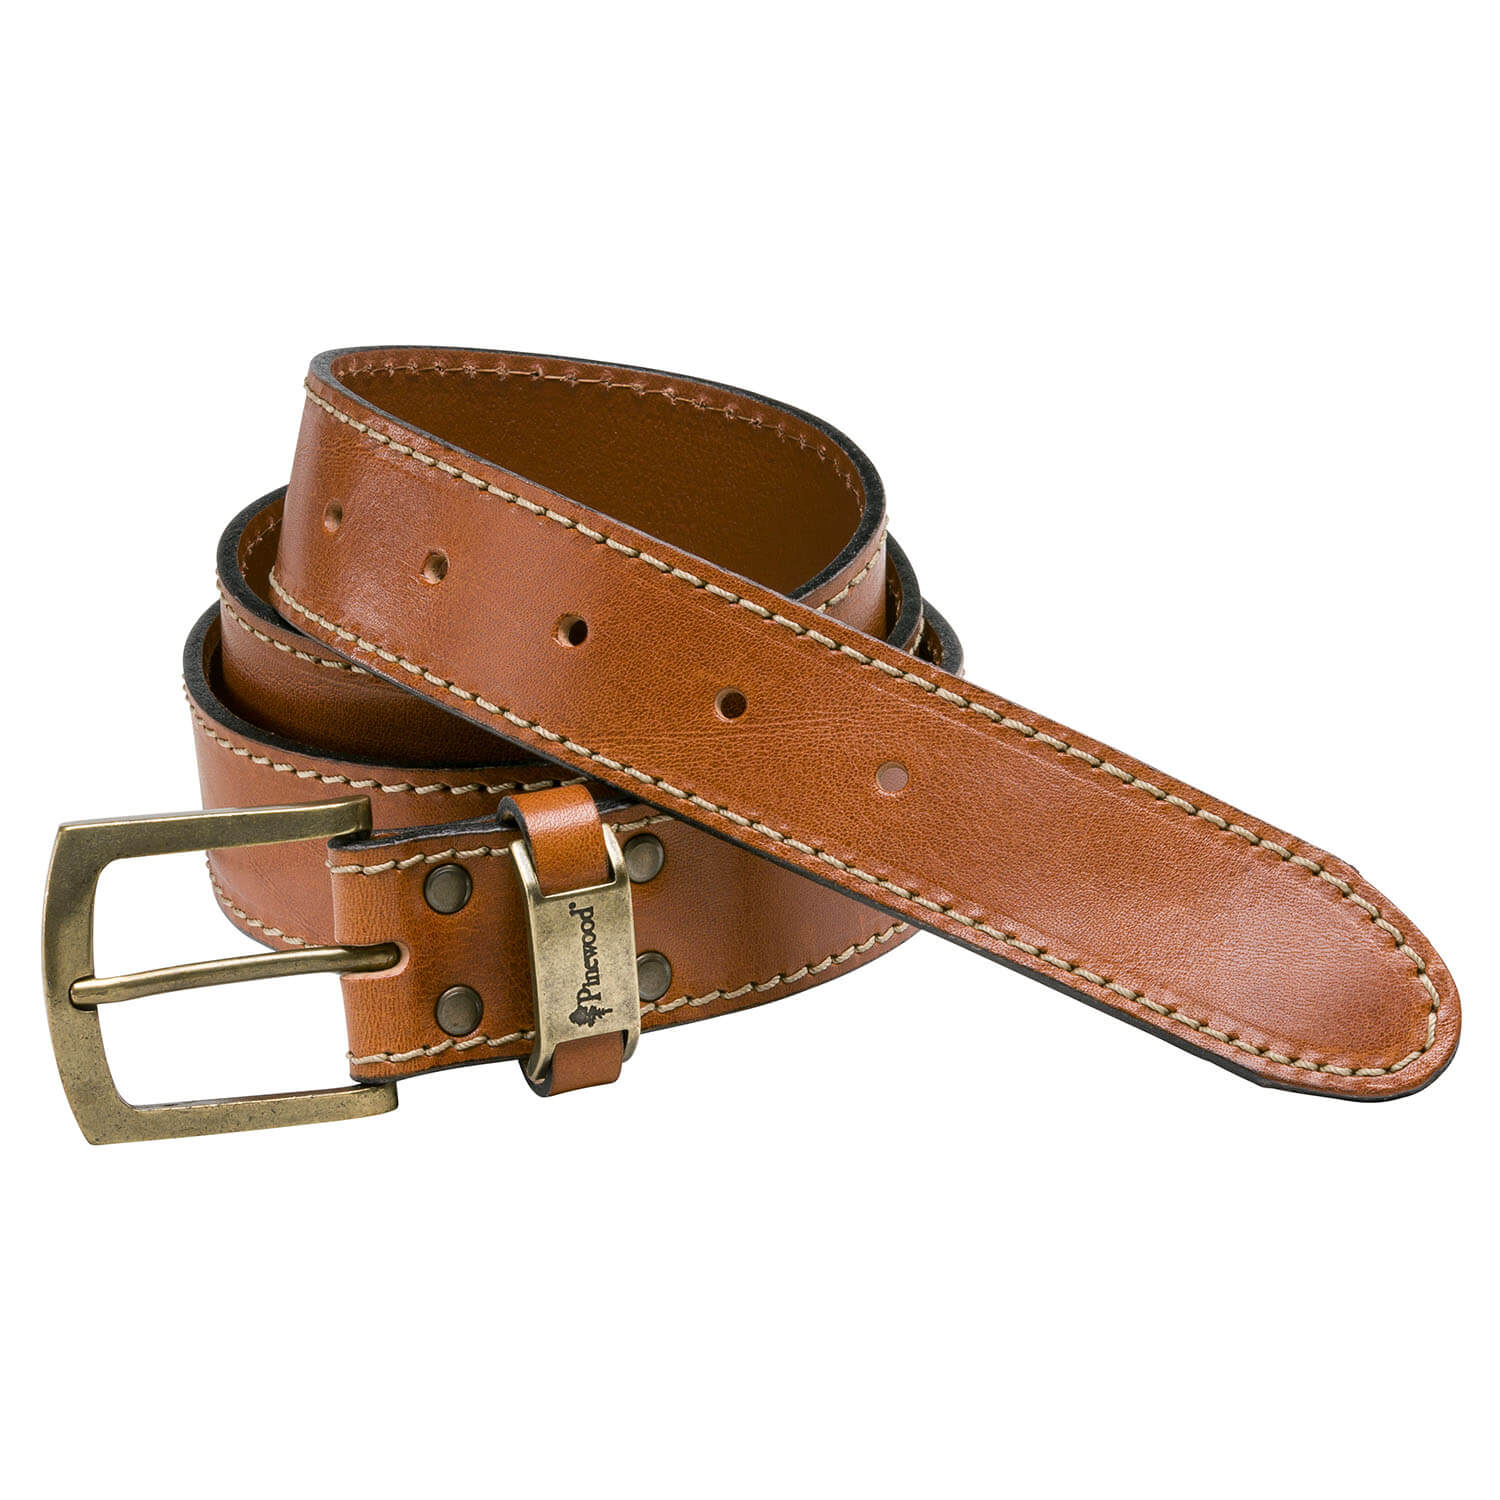 Pinewod Belt Prestwick (brown) - Belts & Suspenders